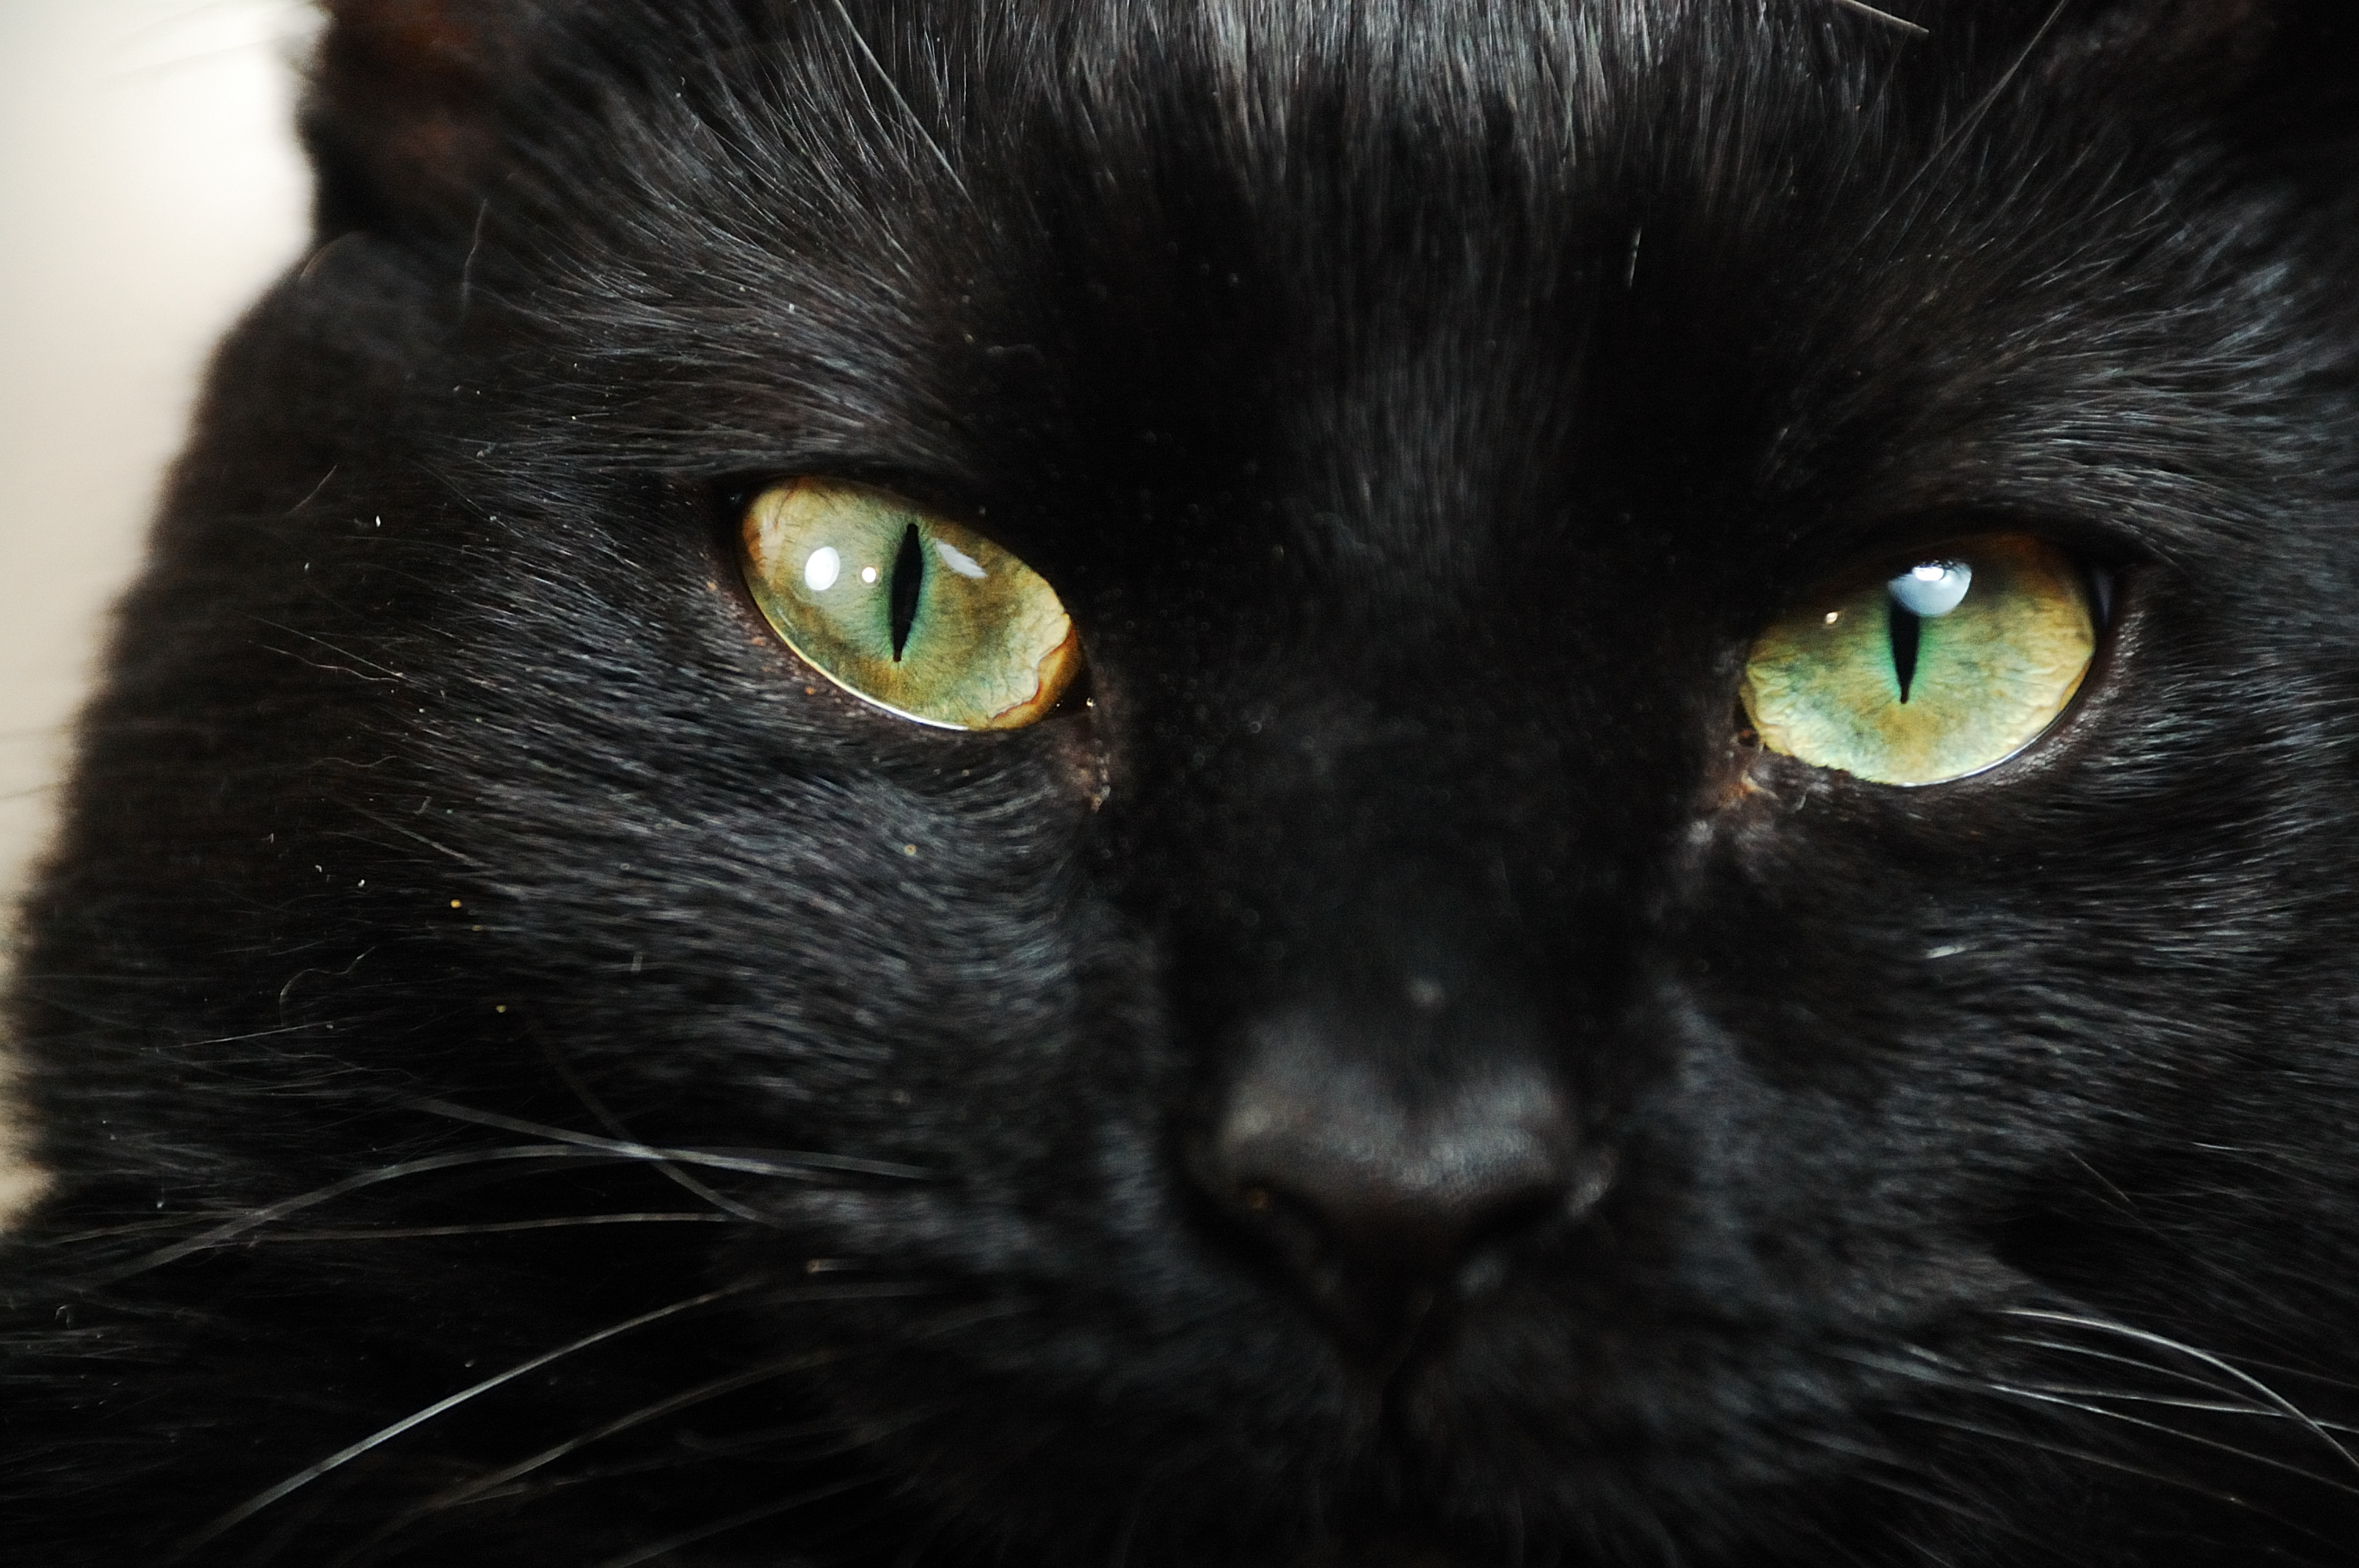 Порода черной кошки с желтыми глазами. Бомбейская черная кошка. Черная Бомбейская кошка с зелеными глазами. Порода черных кошек с желтыми глазами Бомбейская. Черный пушистый кот с желтыми глазами.